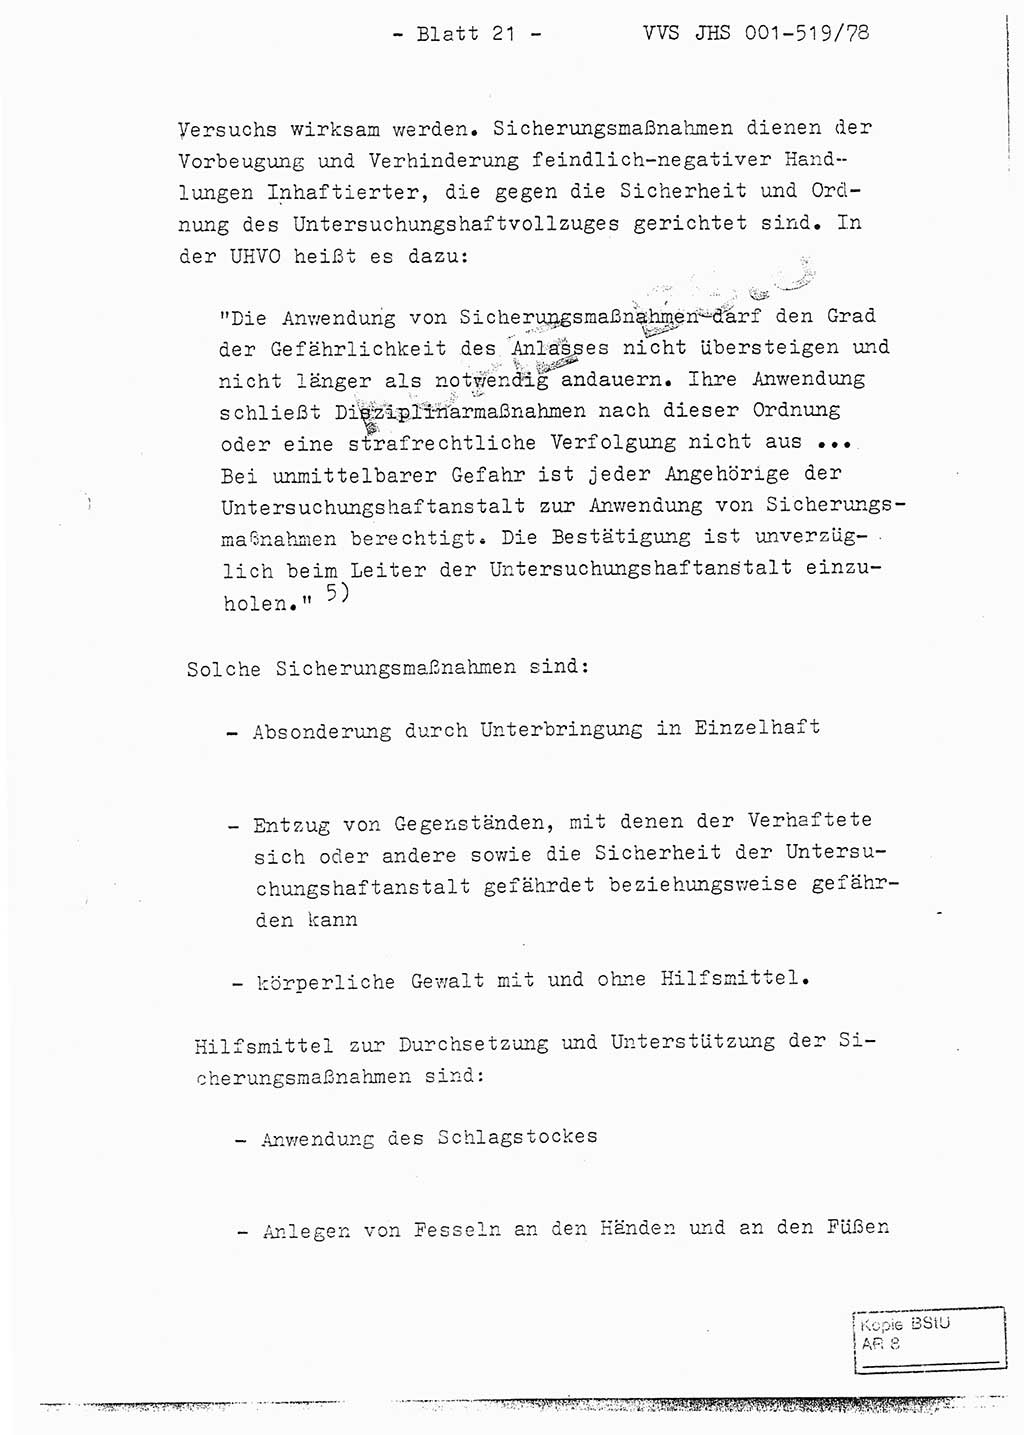 Fachschulabschlußarbeit Hauptmann Alfons Lützelberger (Abt. ⅩⅣ), Ministerium für Staatssicherheit (MfS) [Deutsche Demokratische Republik (DDR)], Juristische Hochschule (JHS), Vertrauliche Verschlußsache (VVS) 001-519/78, Potsdam 1978, Blatt 21 (FS-Abschl.-Arb. MfS DDR JHS VVS 001-519/78 1978, Bl. 21)